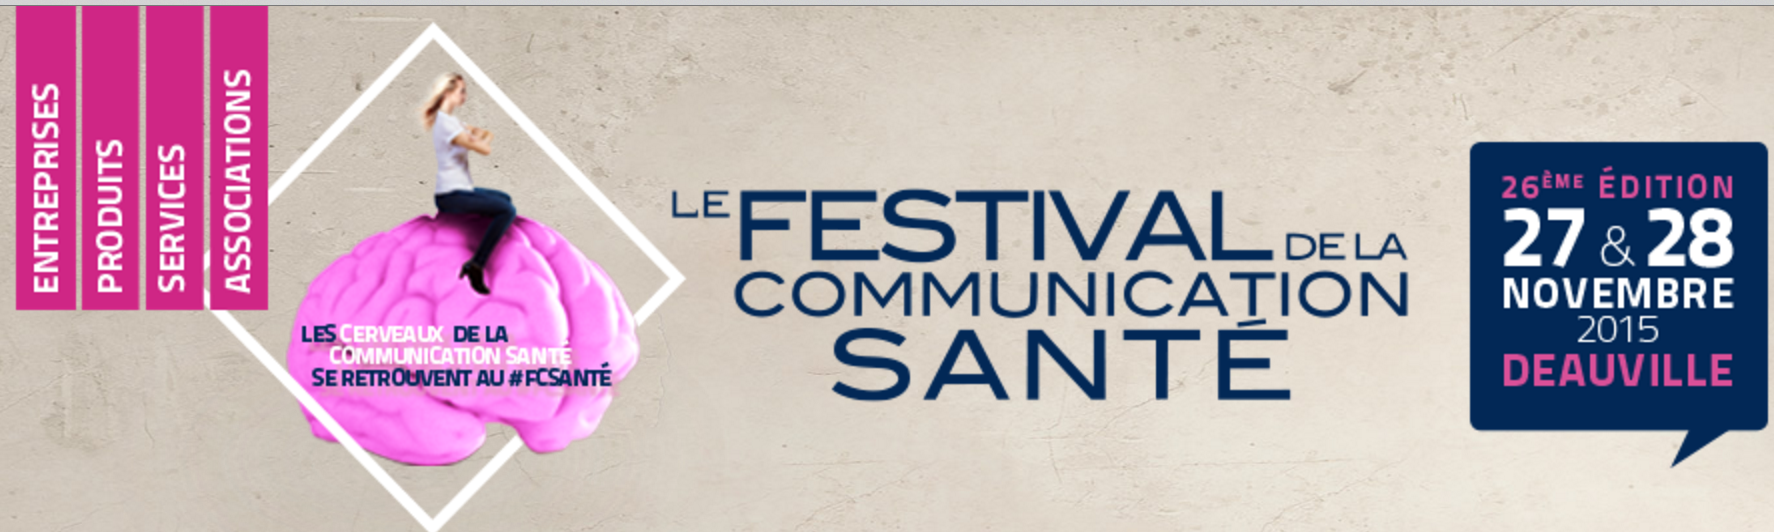 Le 26ième Festival de la Communication Santé - Deauville - Novembre 2015 #FCSANTE